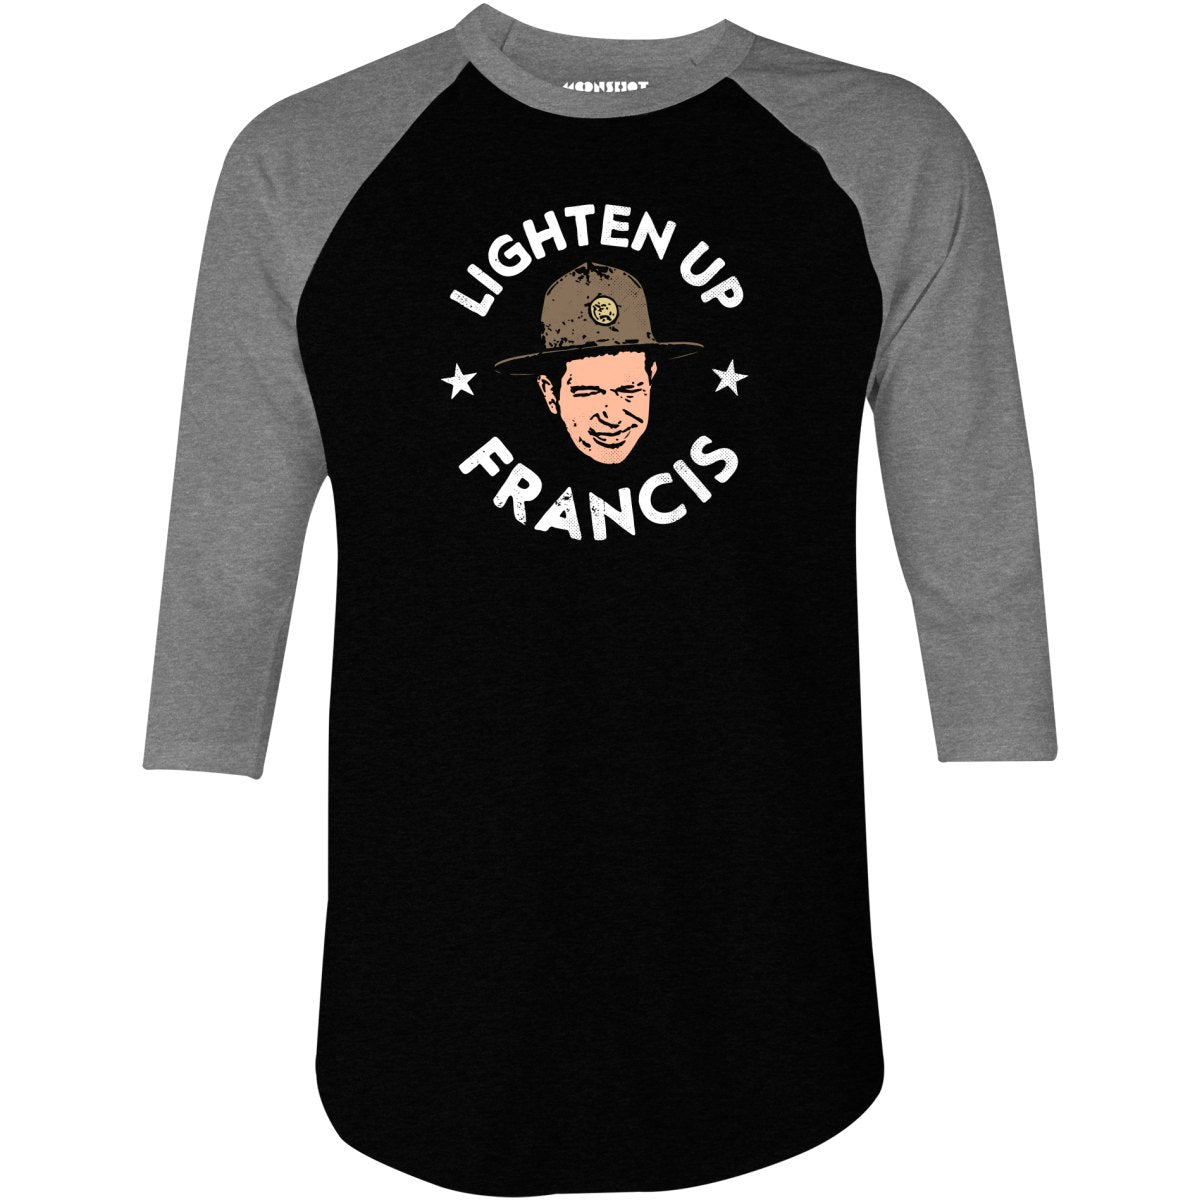 Lighten Up Francis - 3/4 Sleeve Raglan T-Shirt